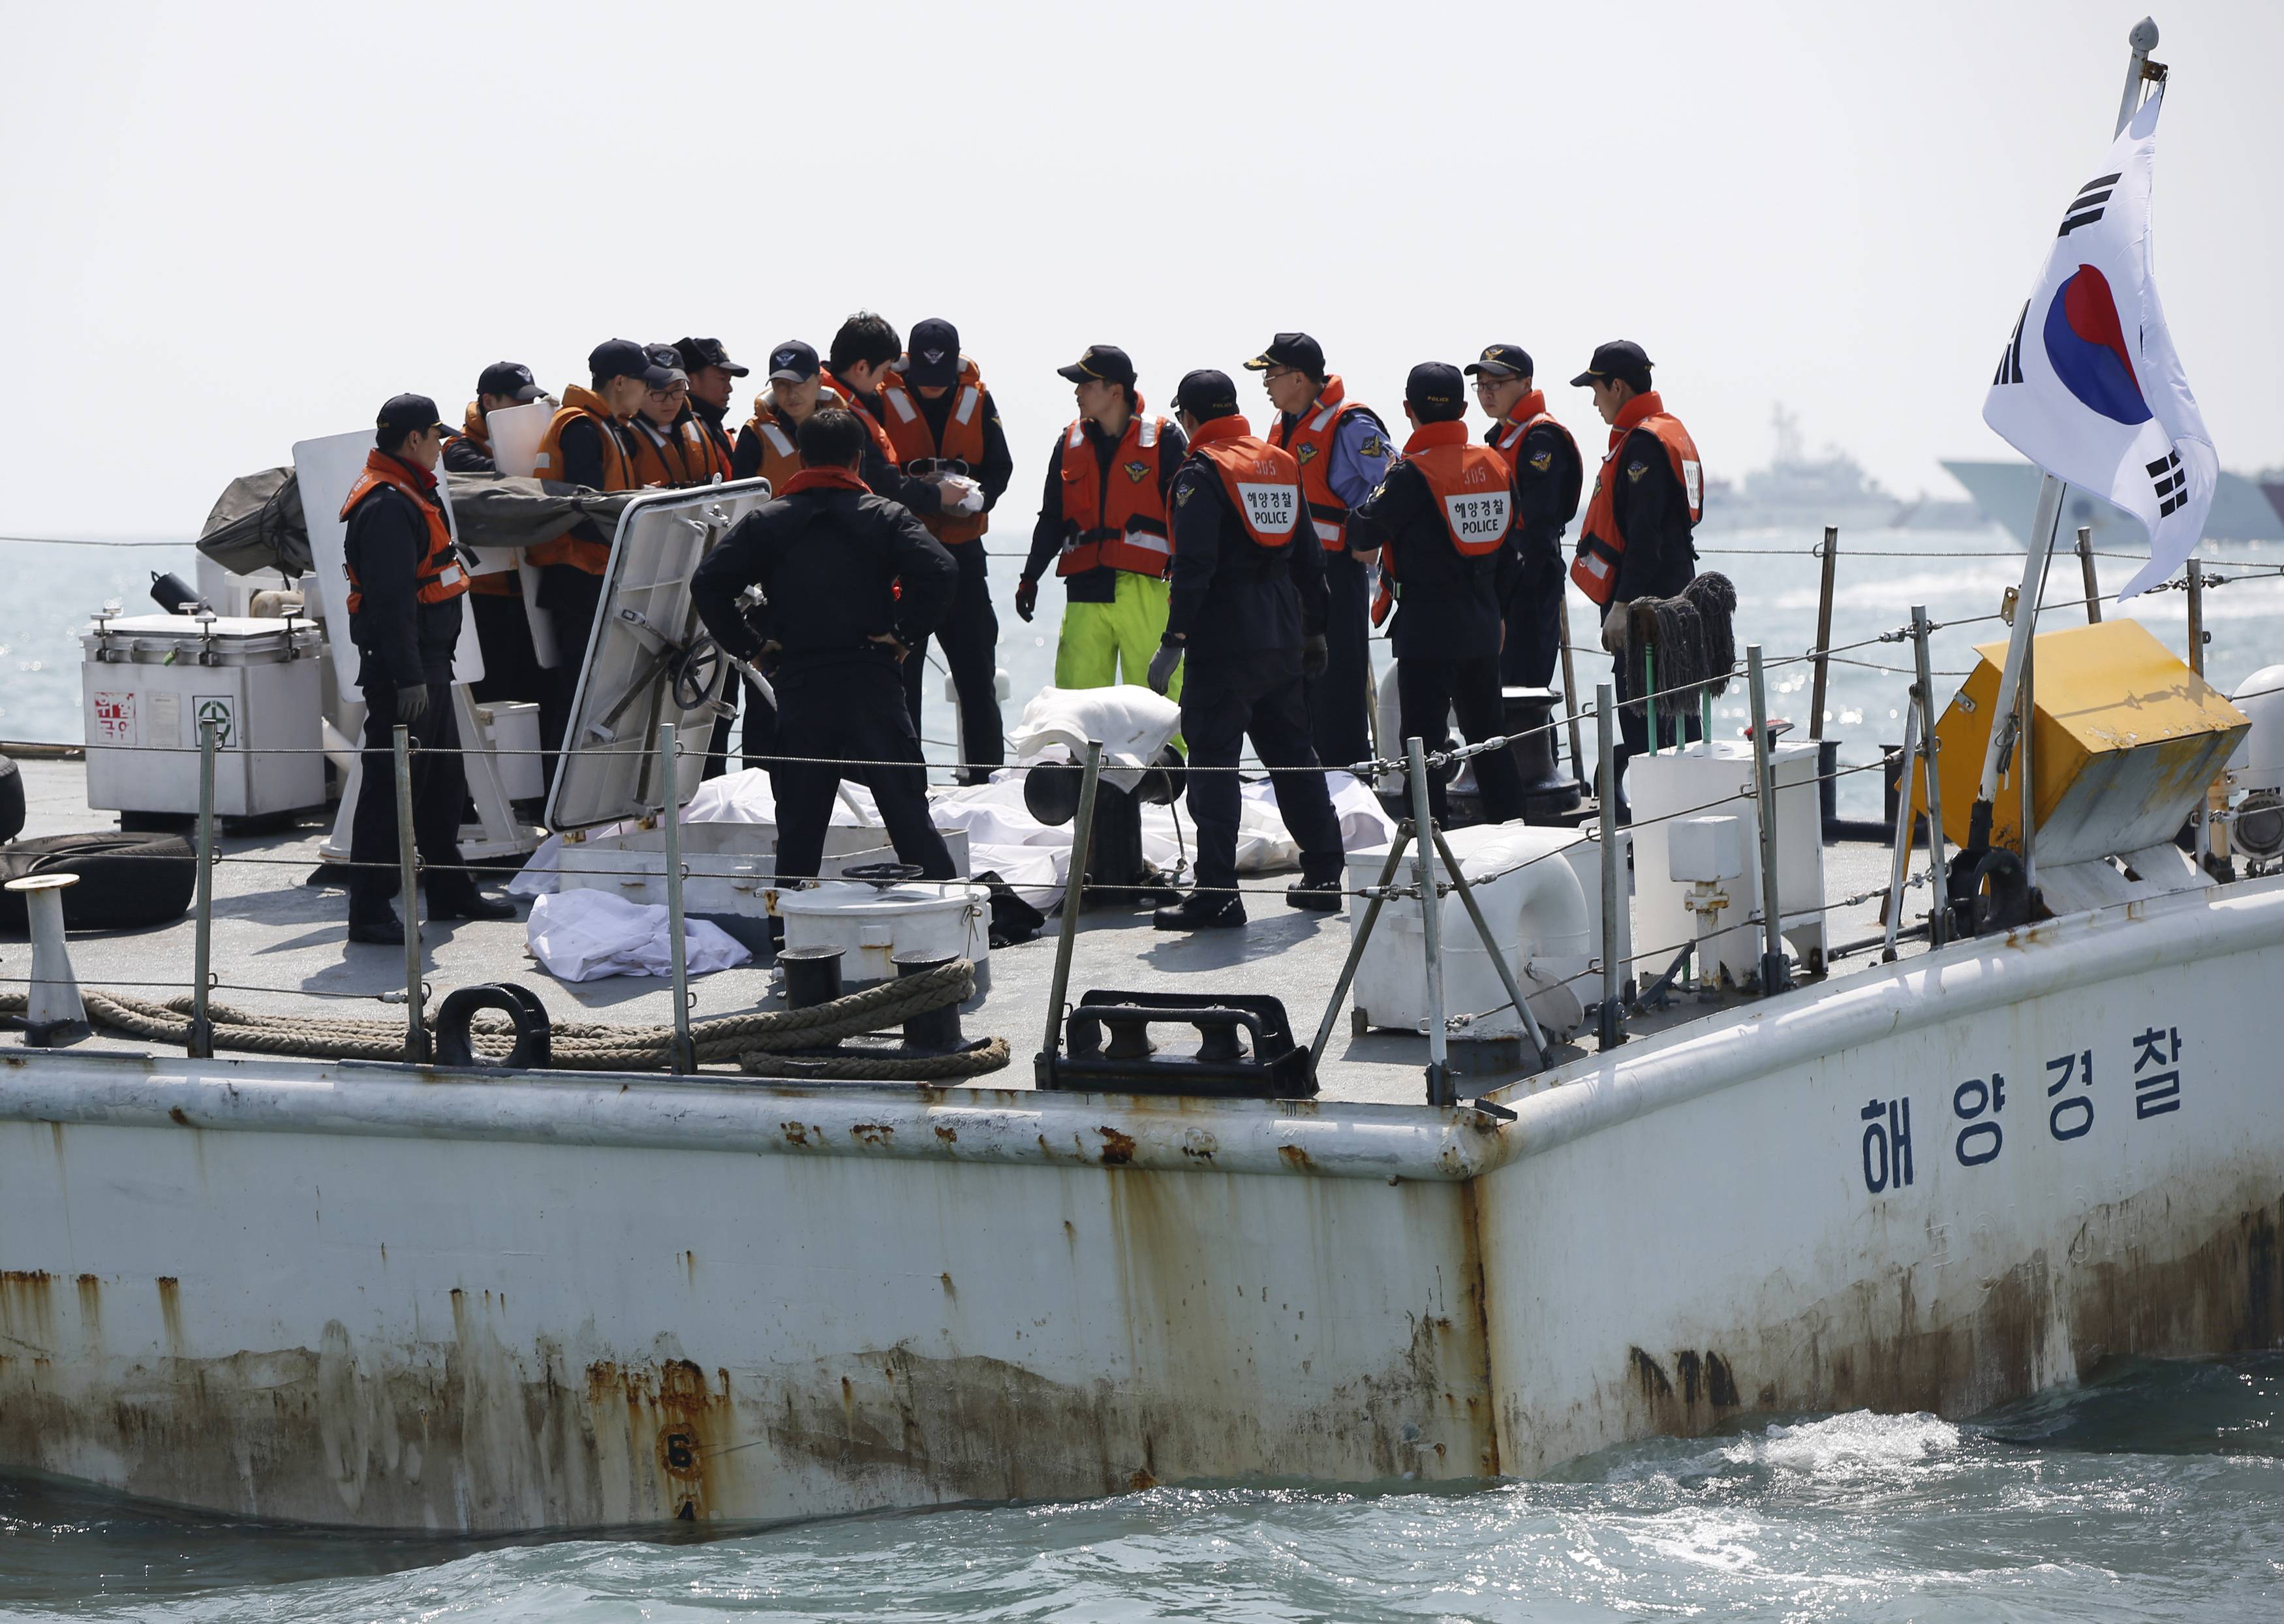 Οι σπαρακτικές προσωπικές ιστορίες των θυμάτων του ναυαγίου στη Νότια Κορέα